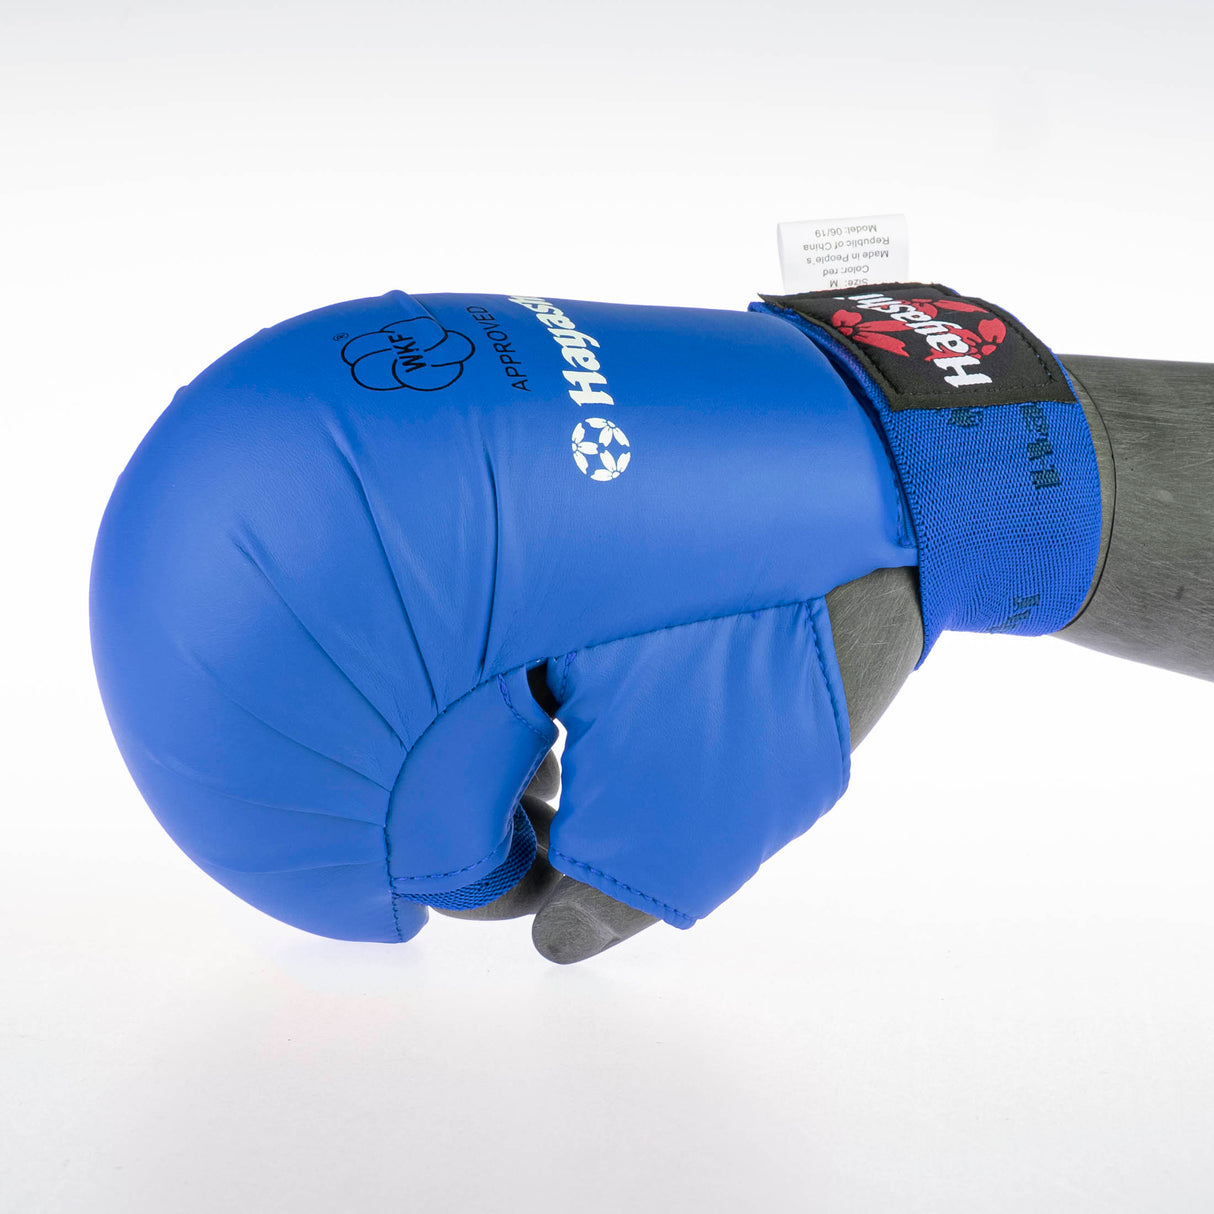 Hayashi Karate protège-poing TSUKI avec pouce (approuvé WKF) - bleu, 238